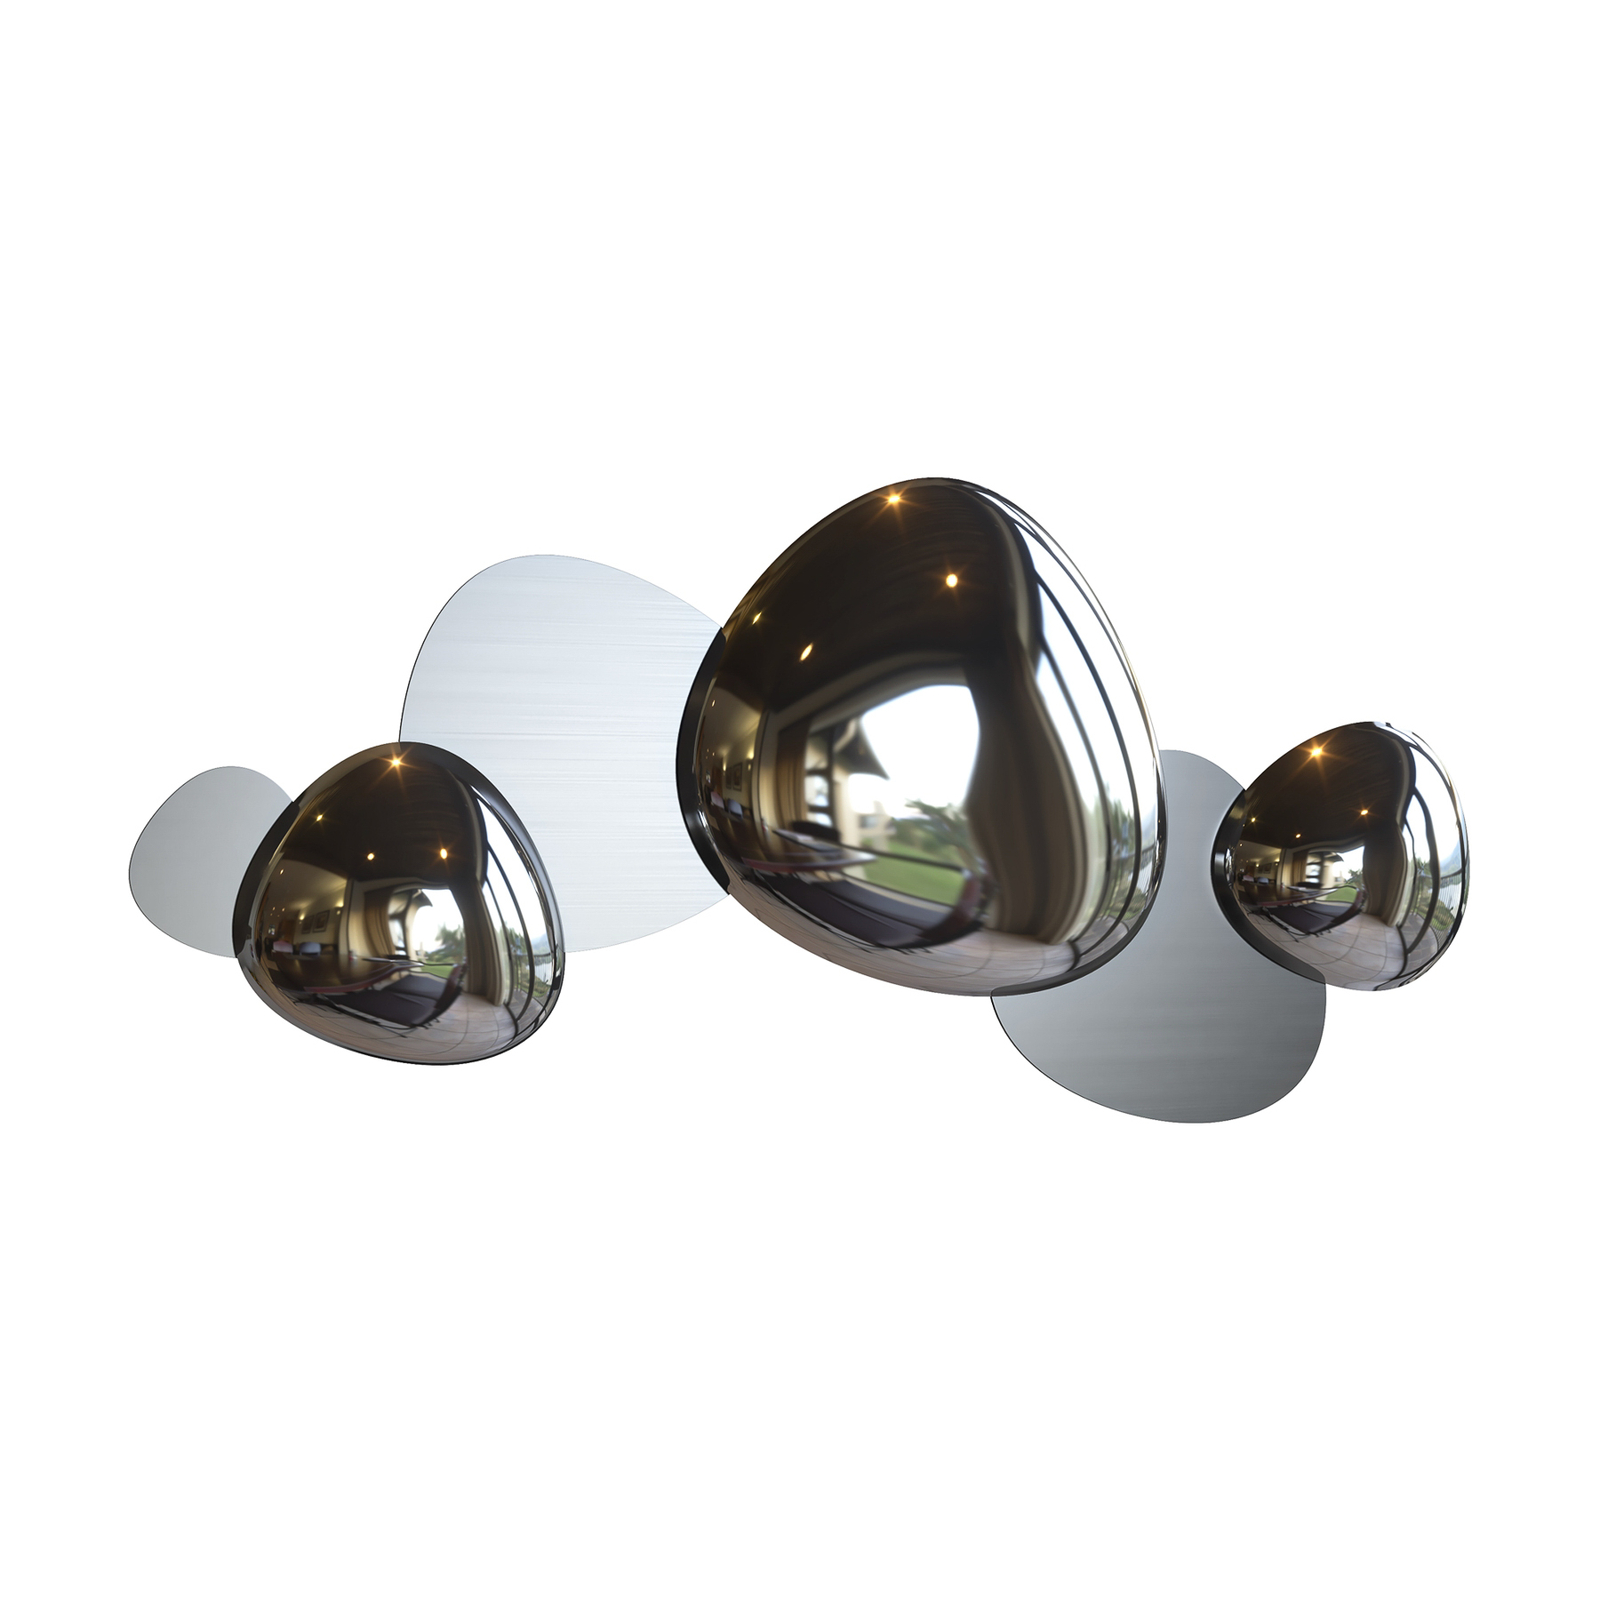 Maytoni Jack-stone aplique LED, 79 cm, níquel